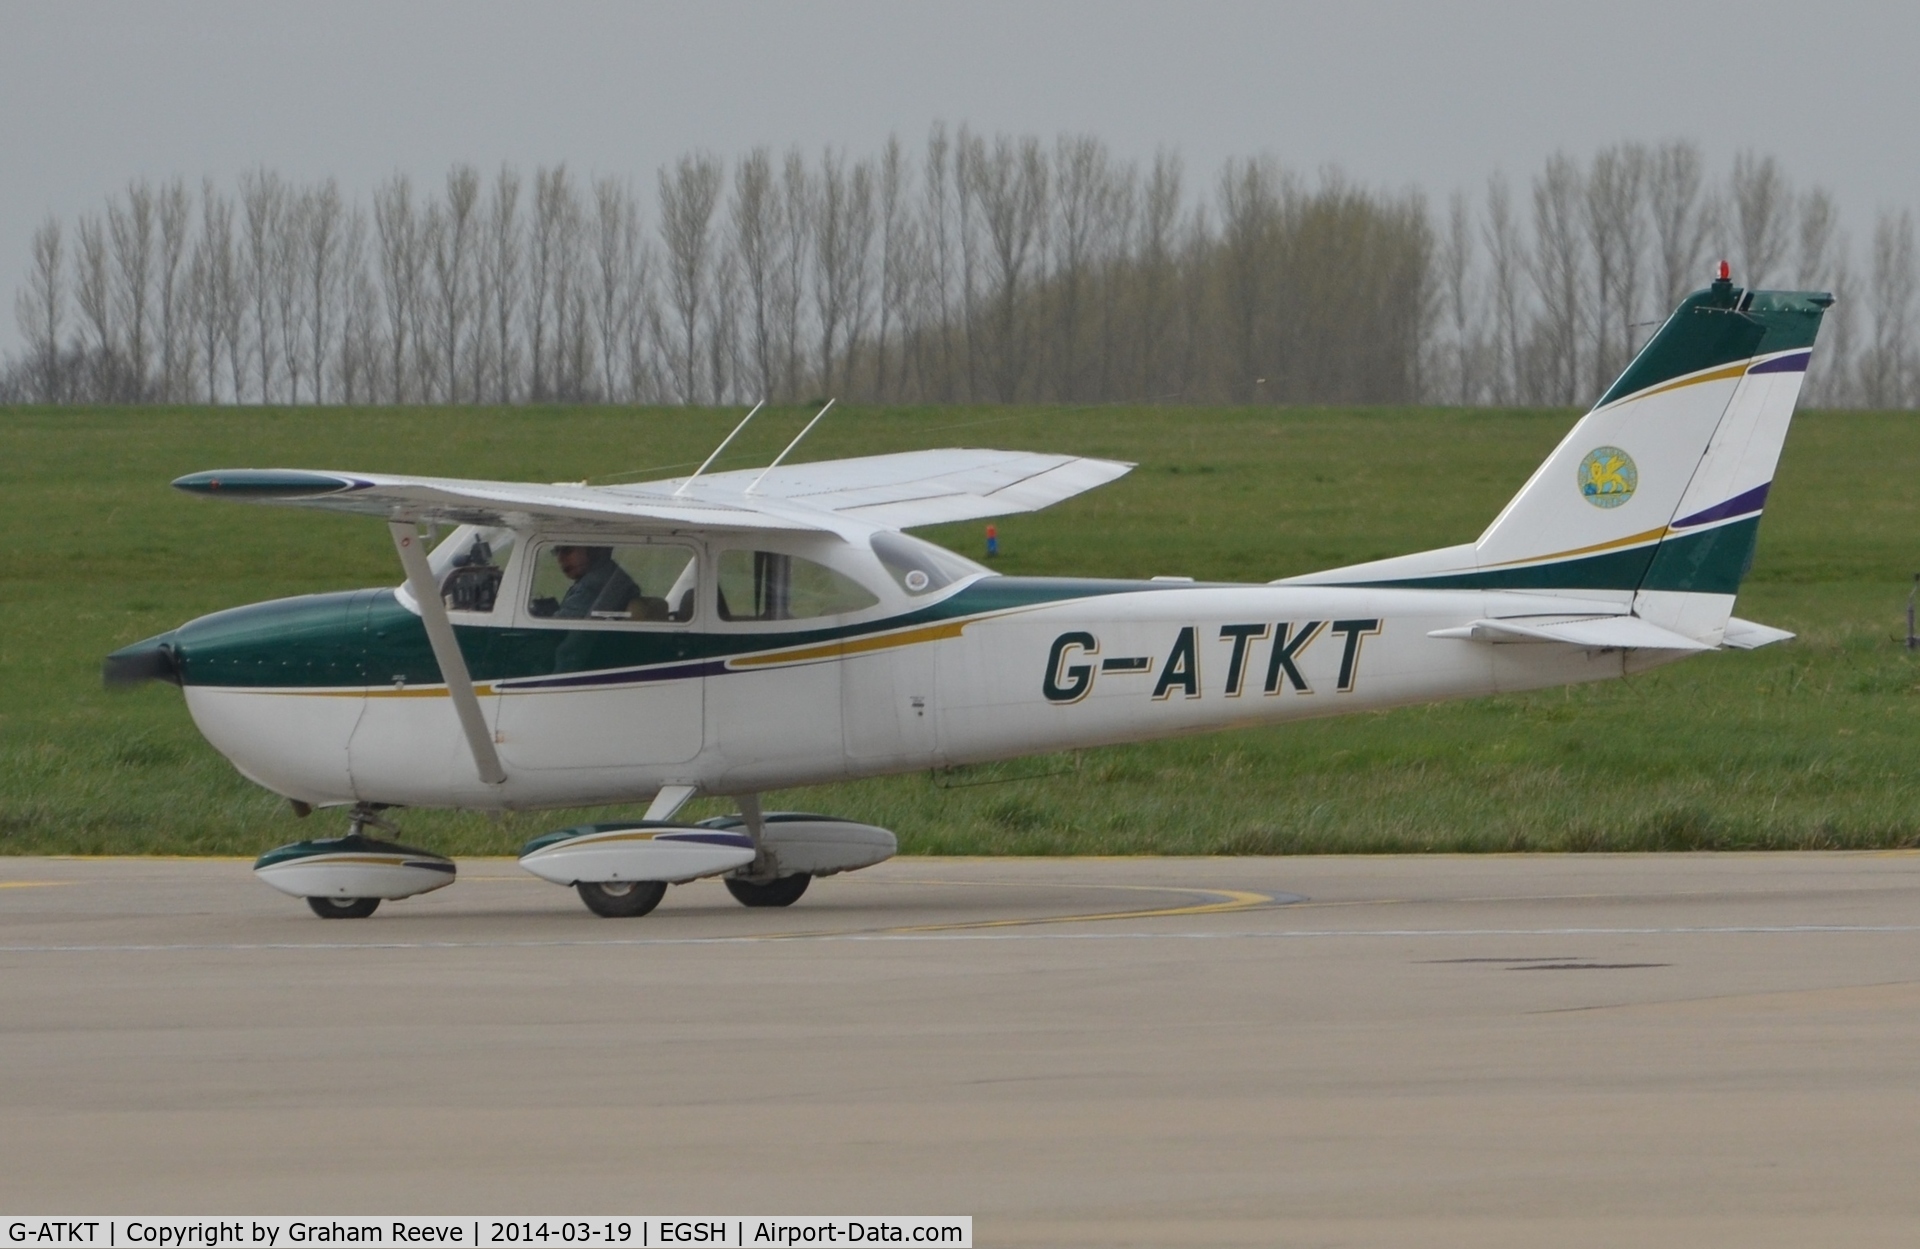 G-ATKT, 1965 Reims F172G Skyhawk C/N 0206, Just landed.